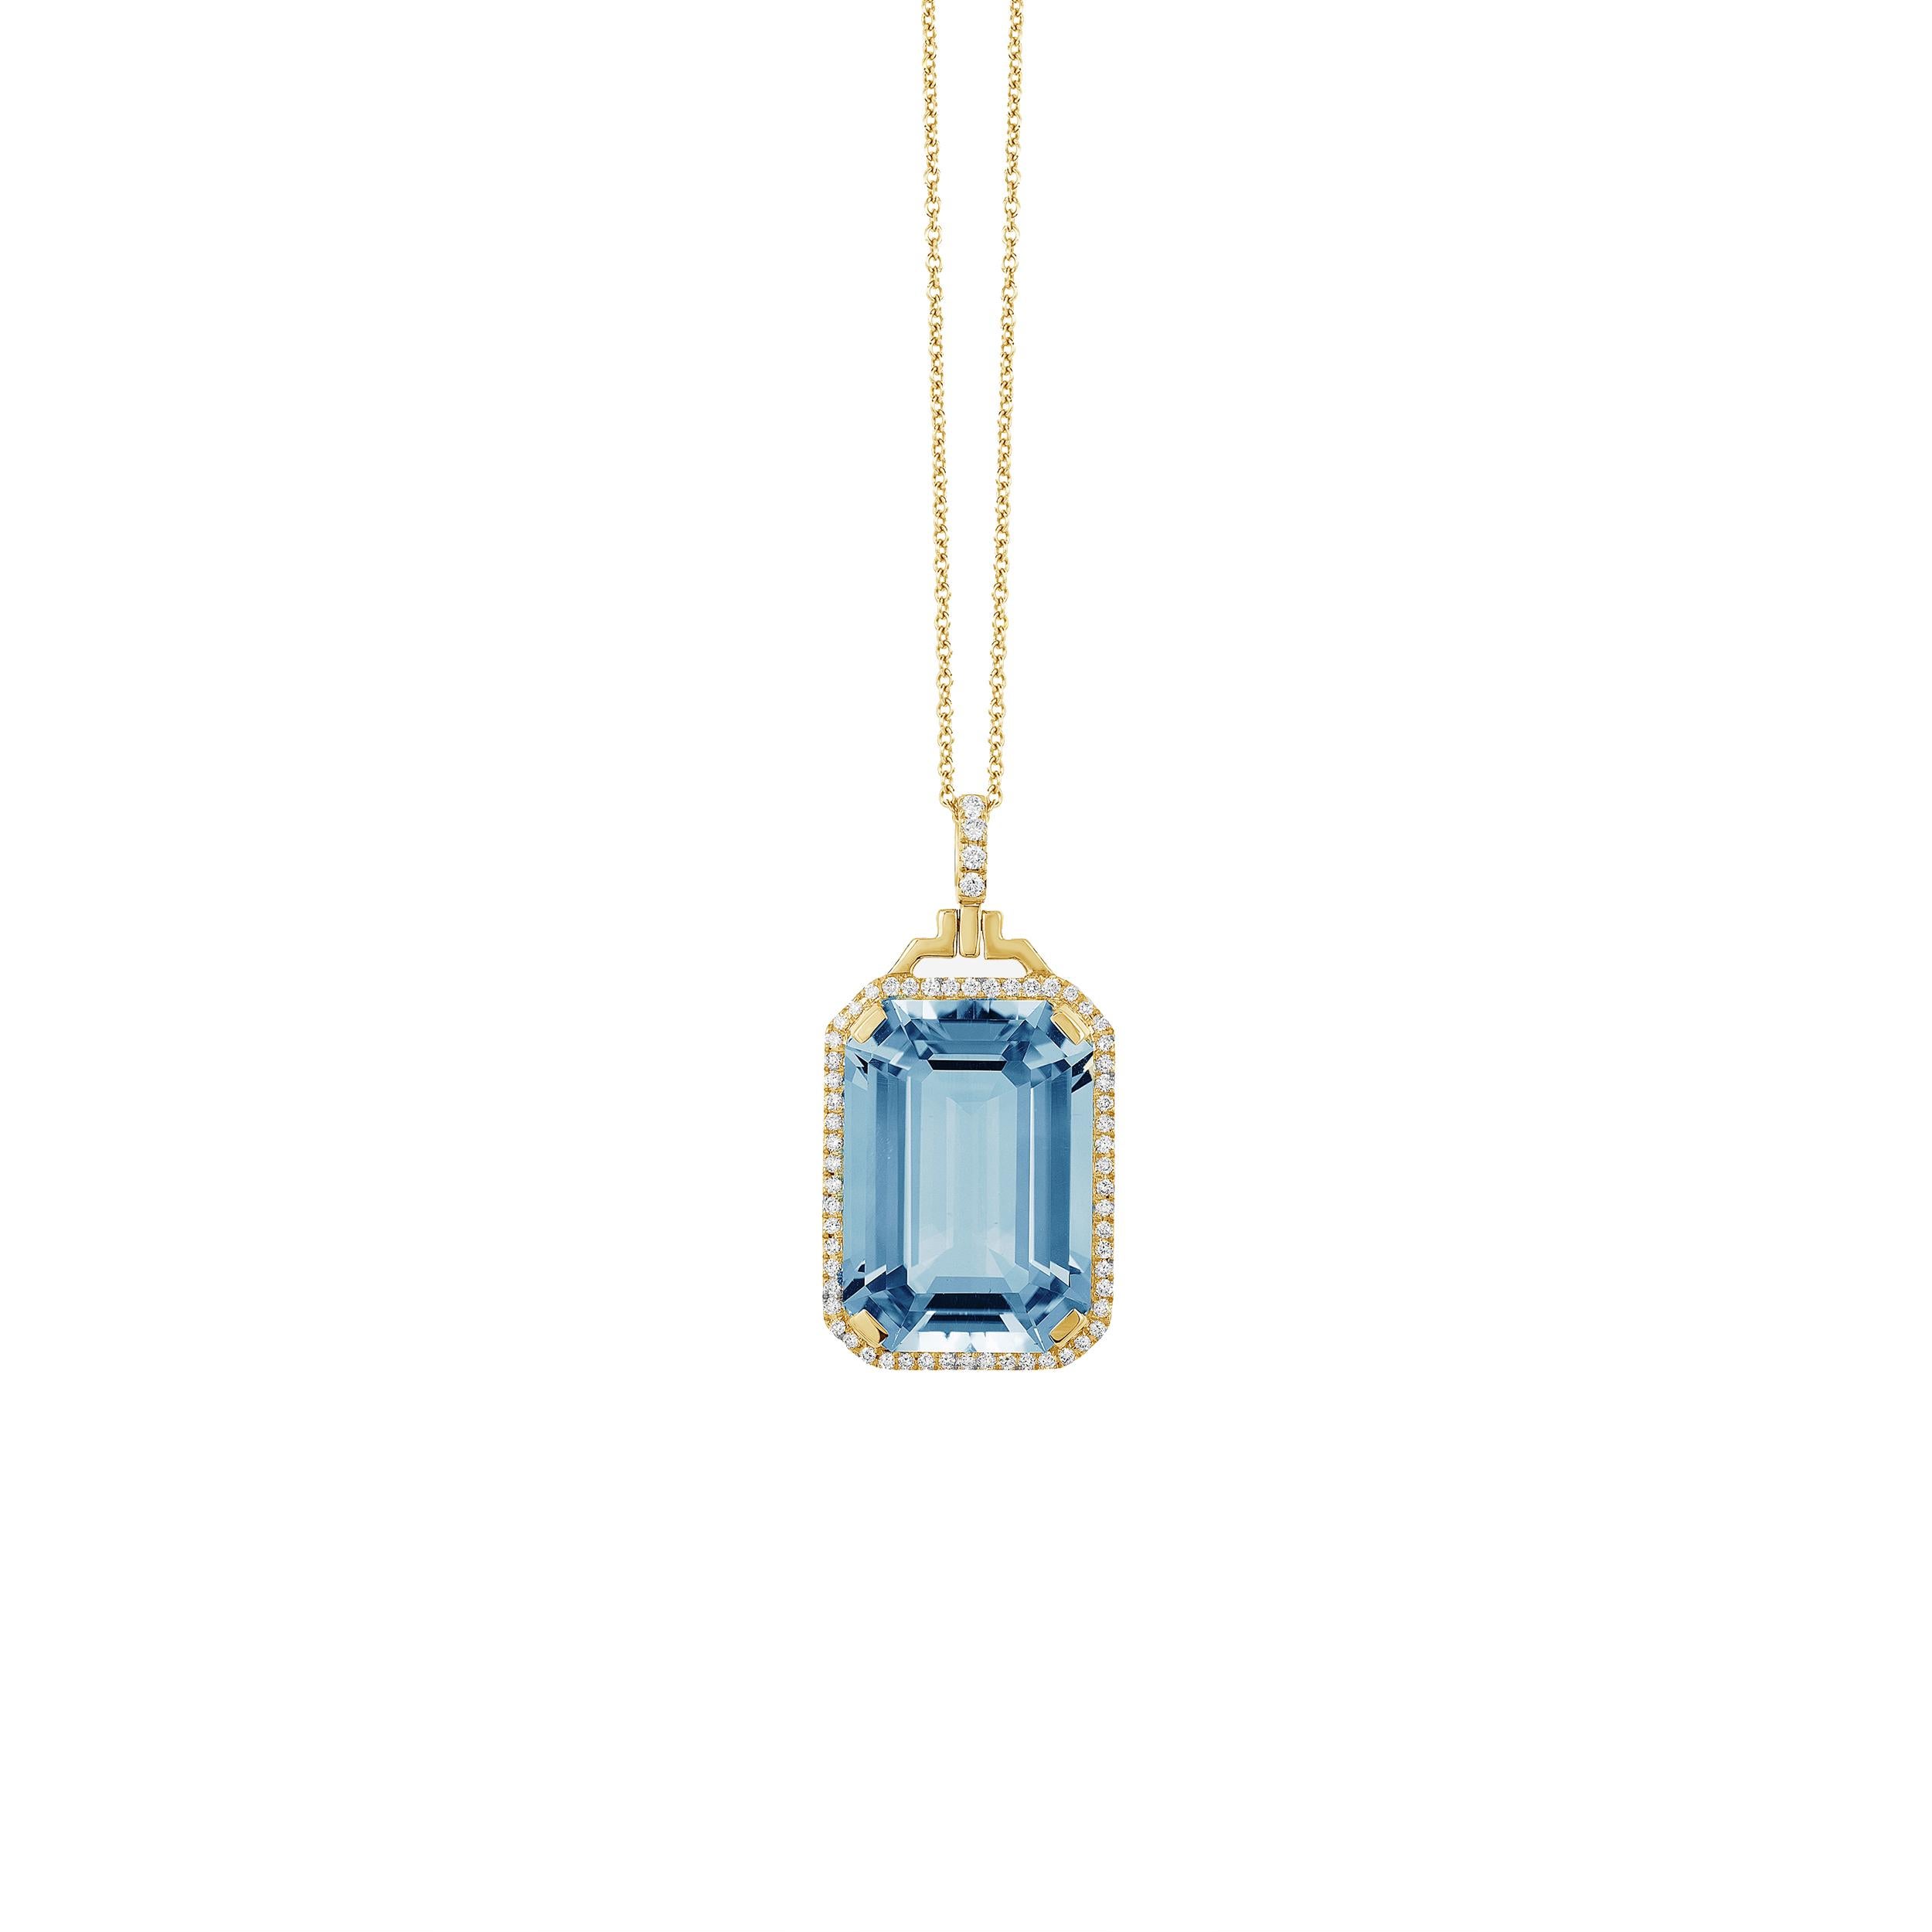 Pendentif en or jaune 18 carats avec topaze bleue taille émeraude et diamants, de la collection 